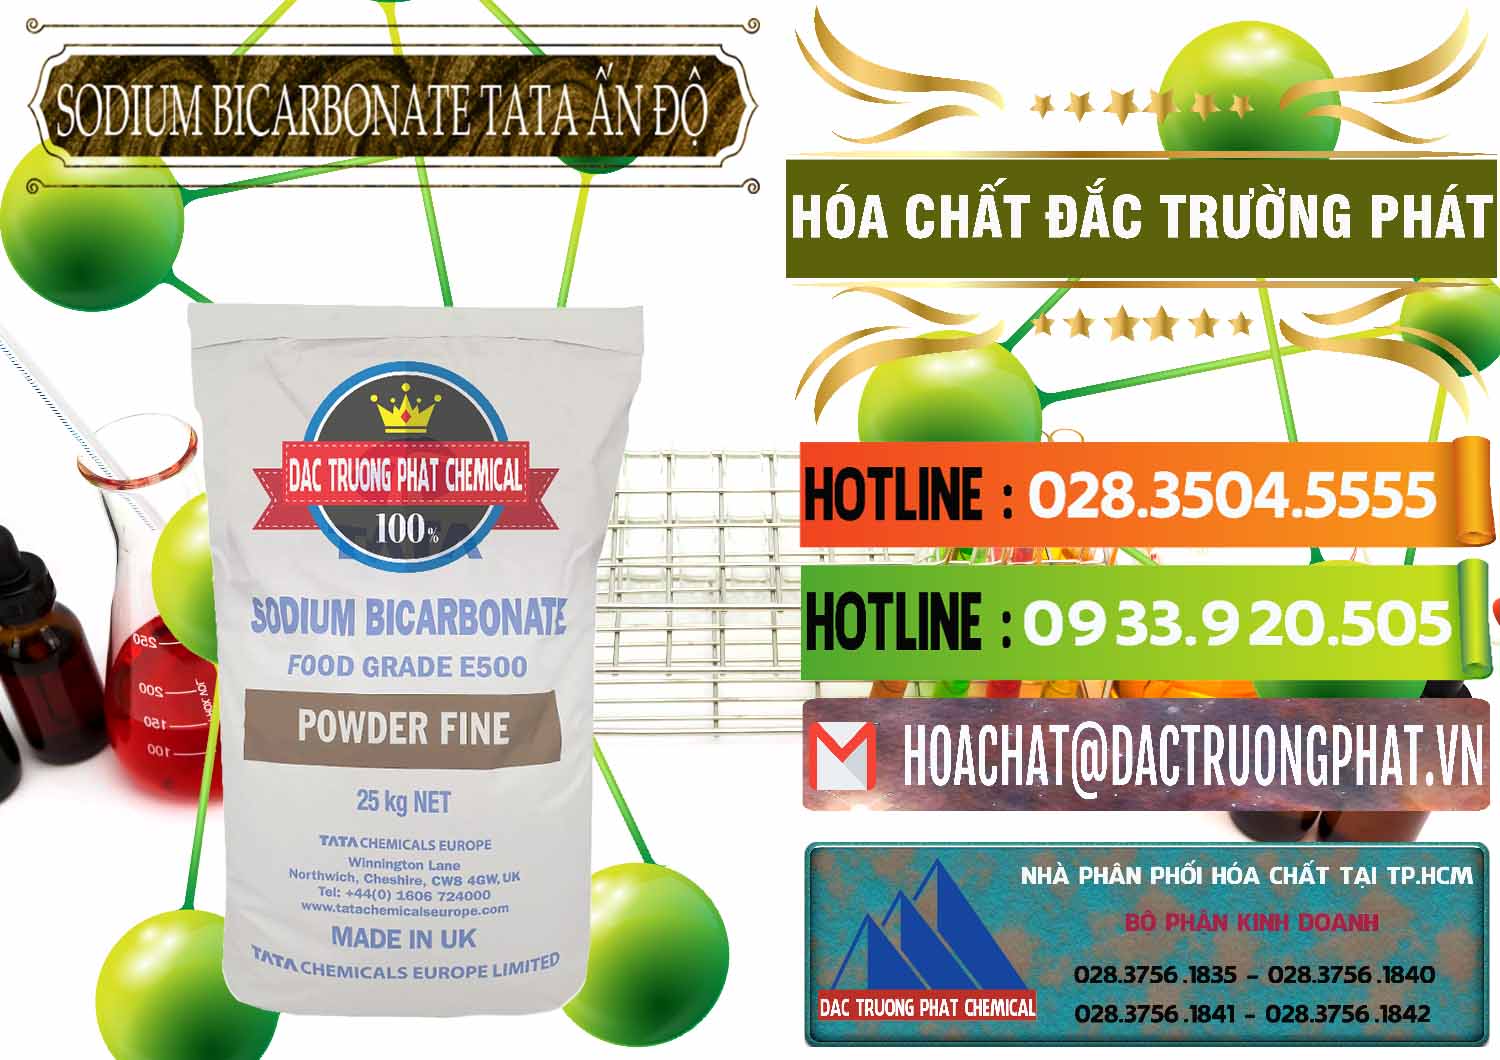 Công ty chuyên bán _ phân phối Sodium Bicarbonate – Bicar NaHCO3 E500 Thực Phẩm Food Grade Tata Ấn Độ India - 0261 - Cty phân phối & bán hóa chất tại TP.HCM - cungcaphoachat.com.vn